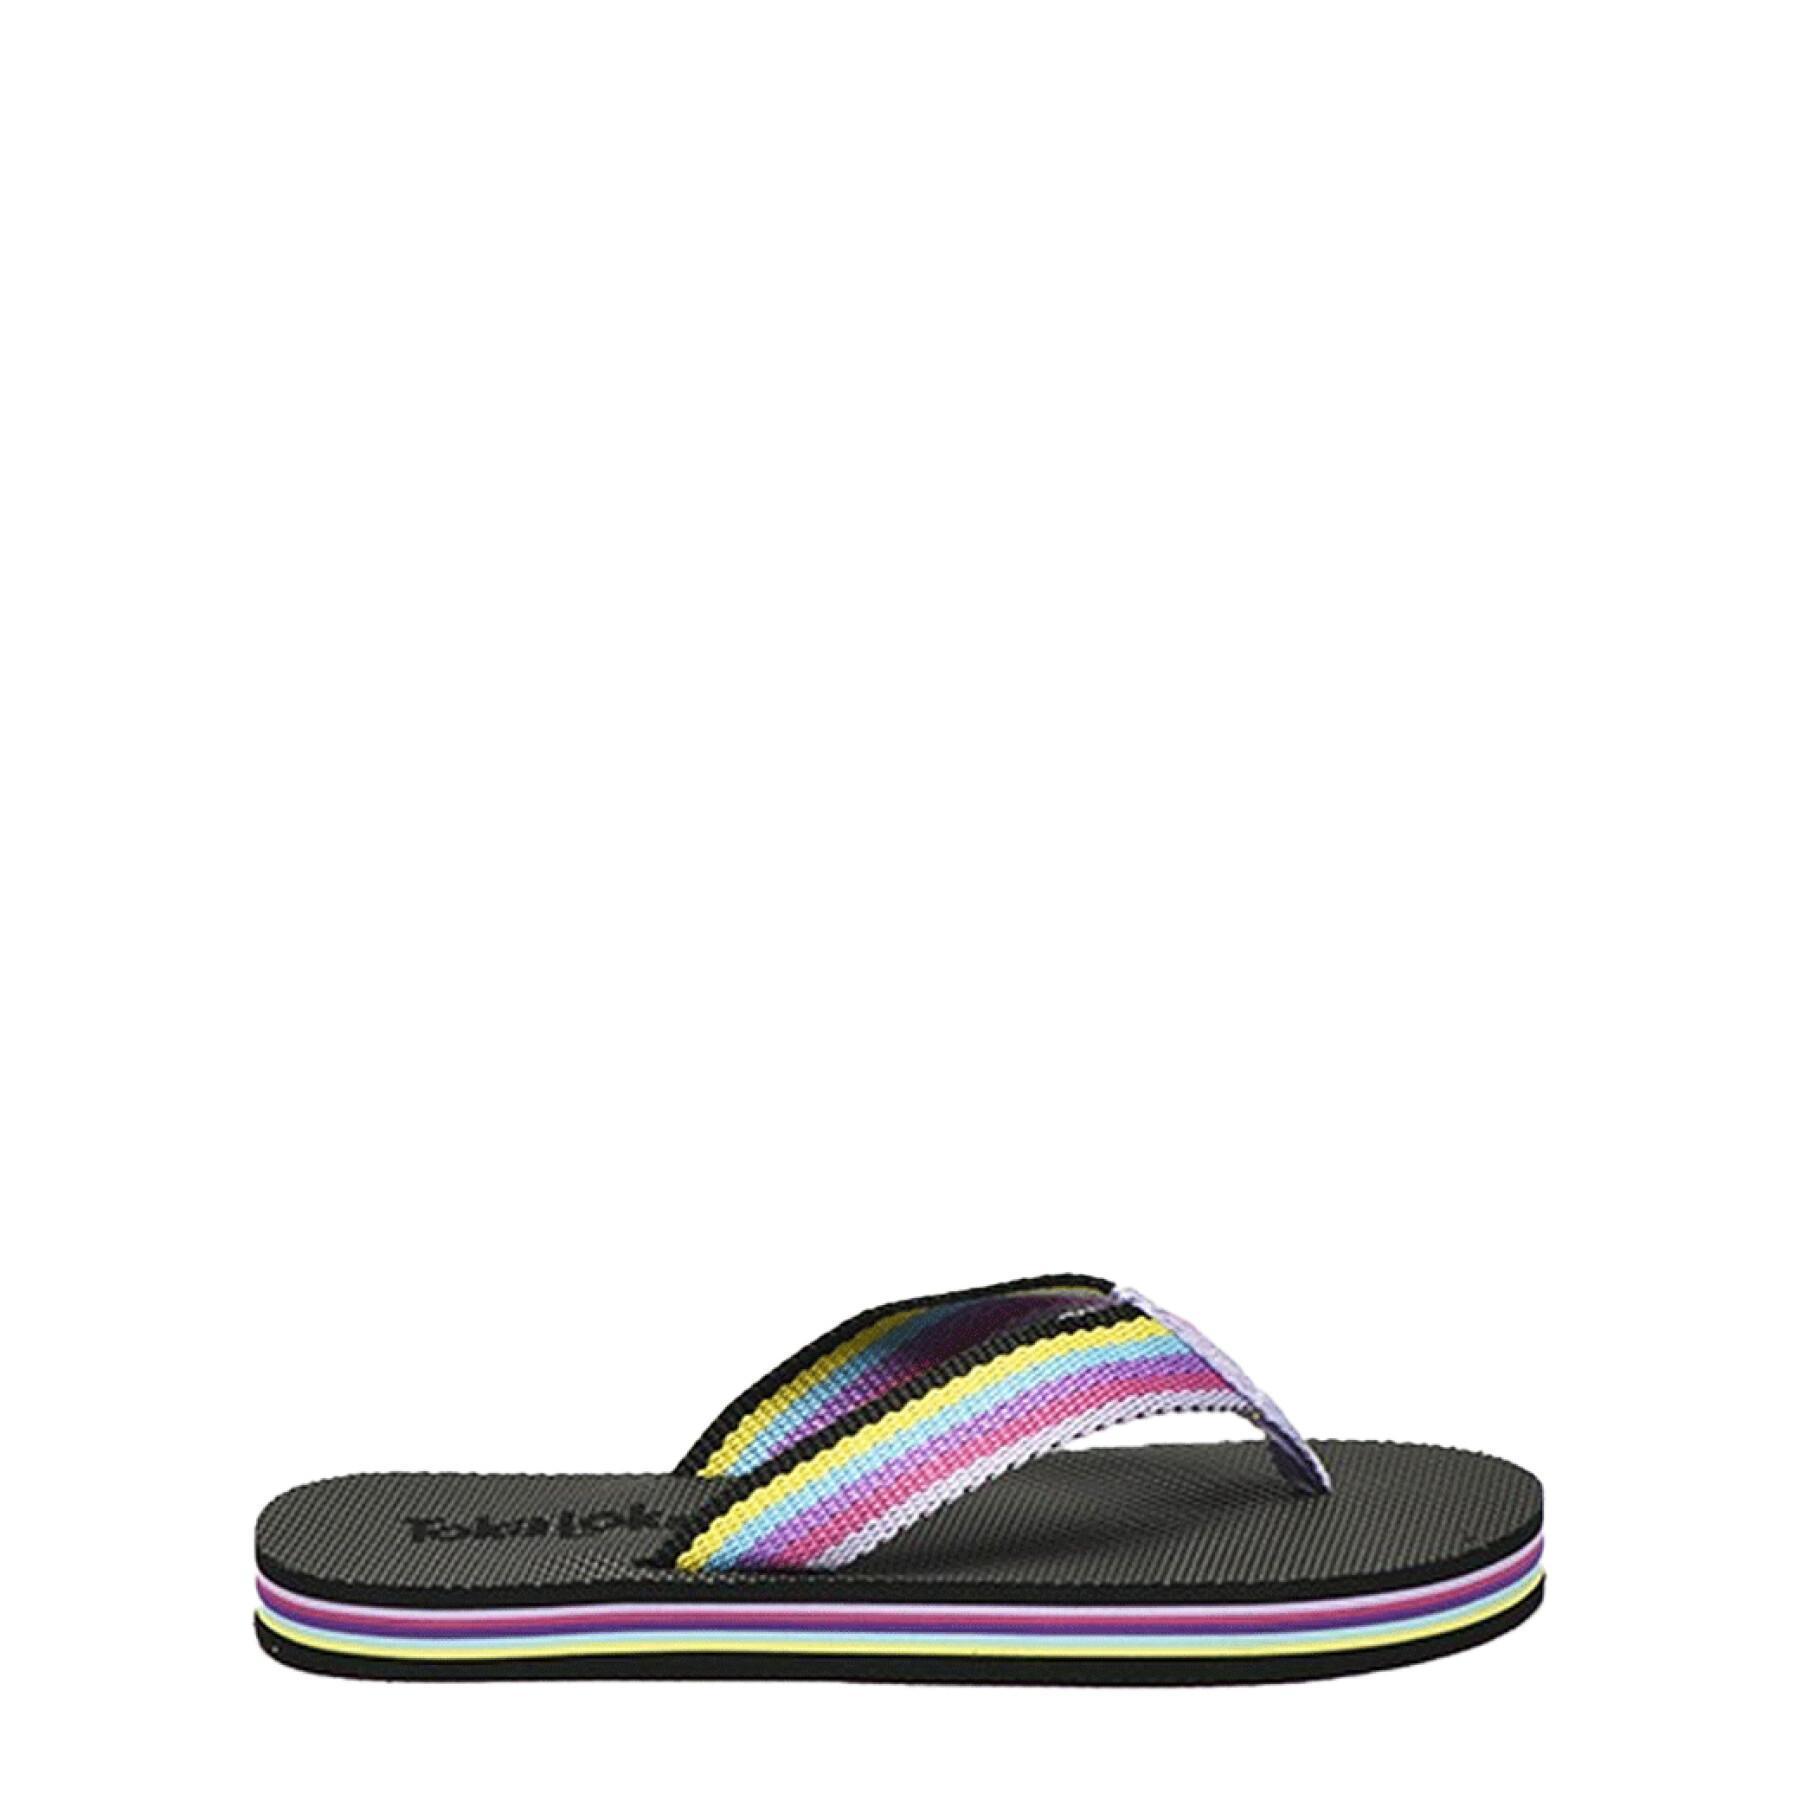 Women's flip-flops Toka Loka Pastel Rainbow